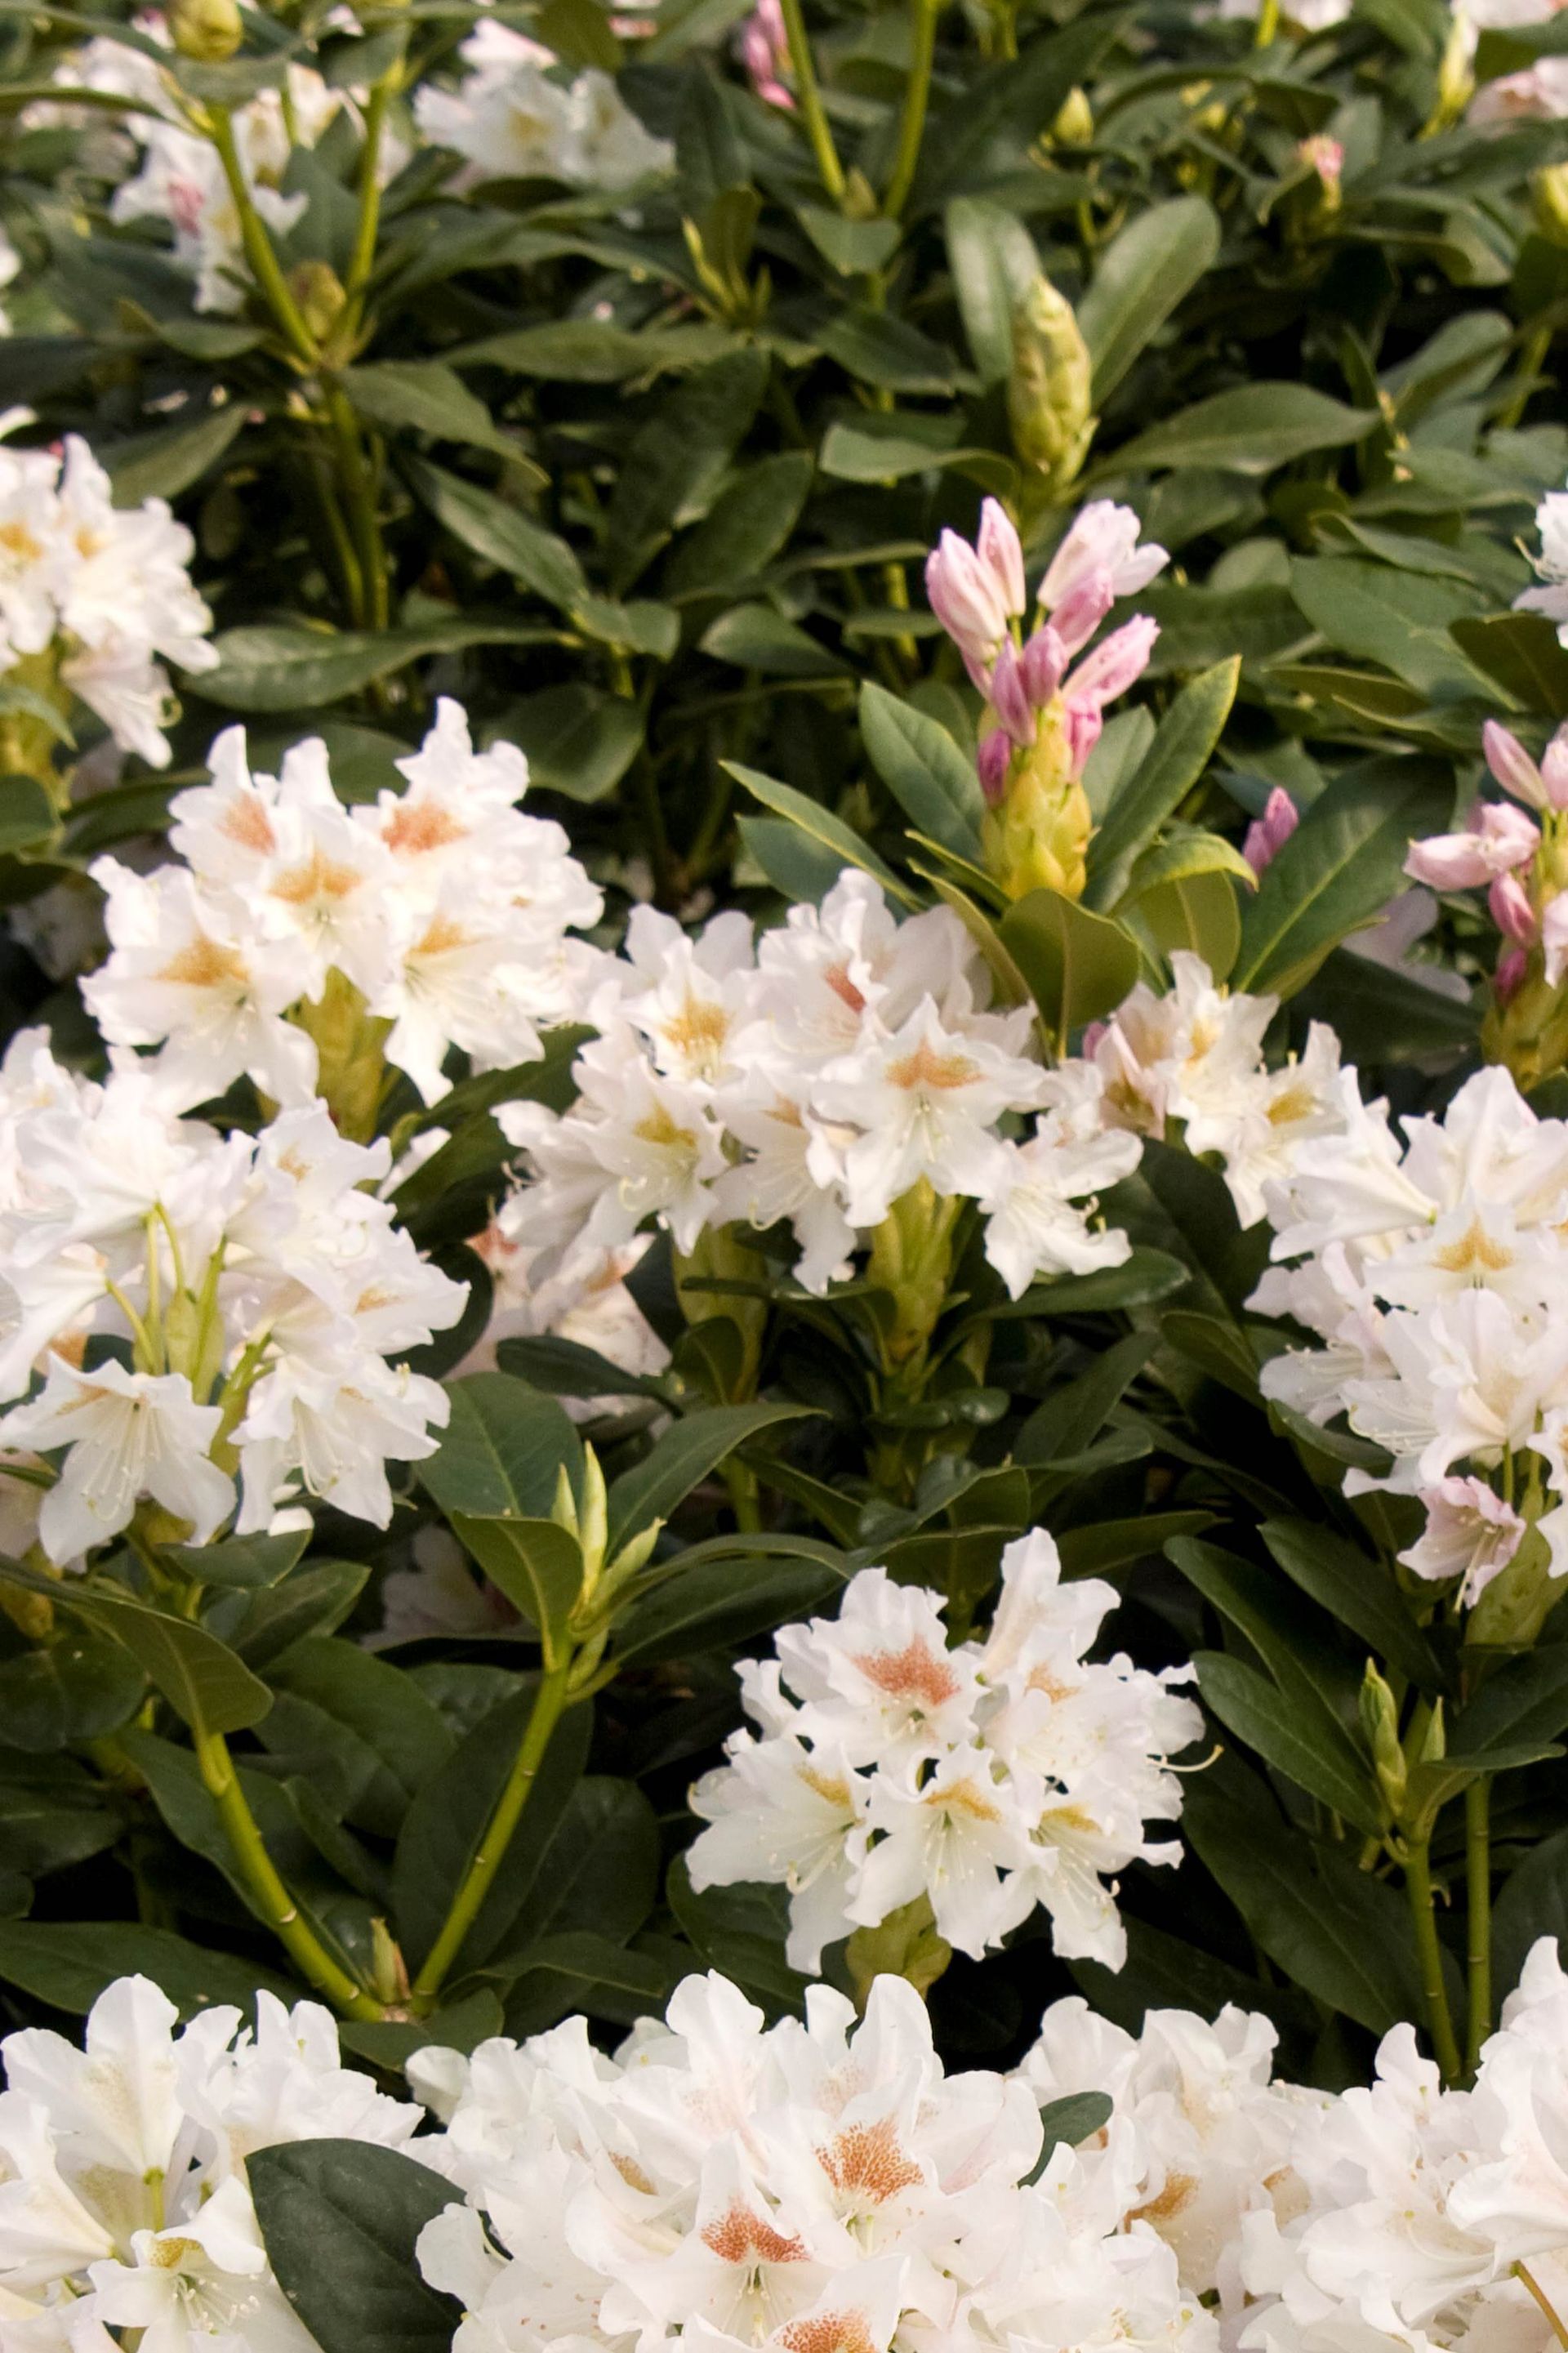 Cunningham White Rhododendron shrub flowering bush for sale in Lebanon